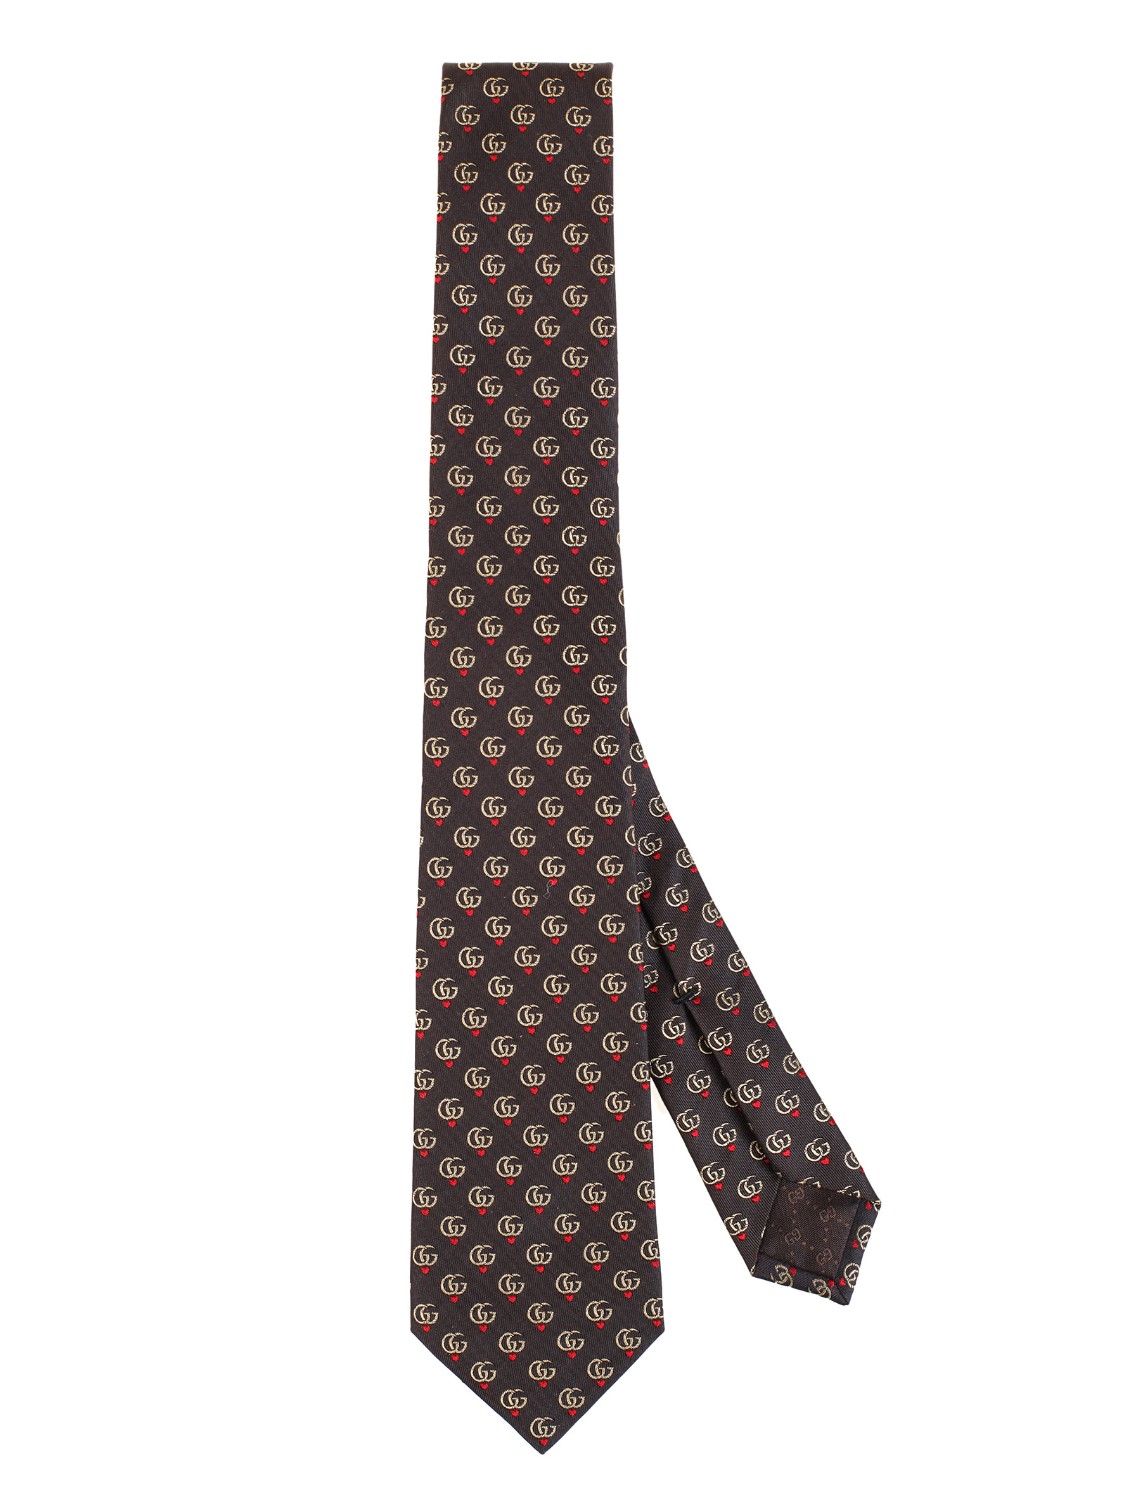 shop GUCCI Saldi Cravatta: Gucci cravatta in seta con Doppia G e cuori.
Dimensioni: L7cm x A148cm.
Composizione: 100% seta.
Made in Italy.. 571789 4E002-2000 number 8542505